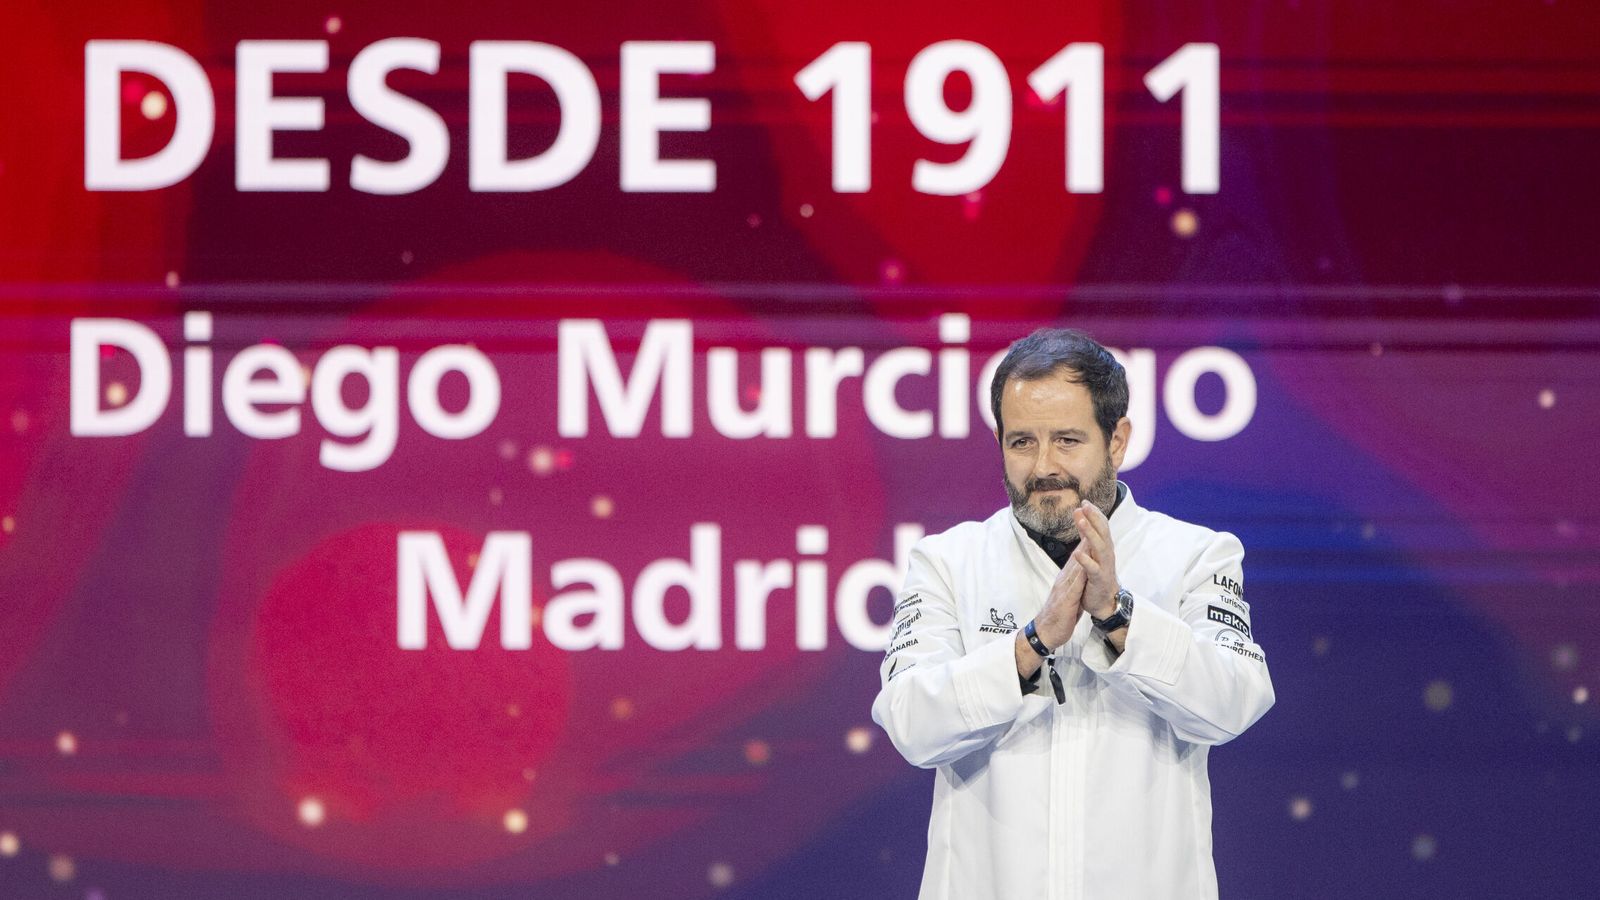 El cocinero Diego Murciego, del restaurante Desde 1911 de Madrid, recogiendo su primera estrella Michelin el pasado noviembre. (Europa Press/Lorena Sopeña)